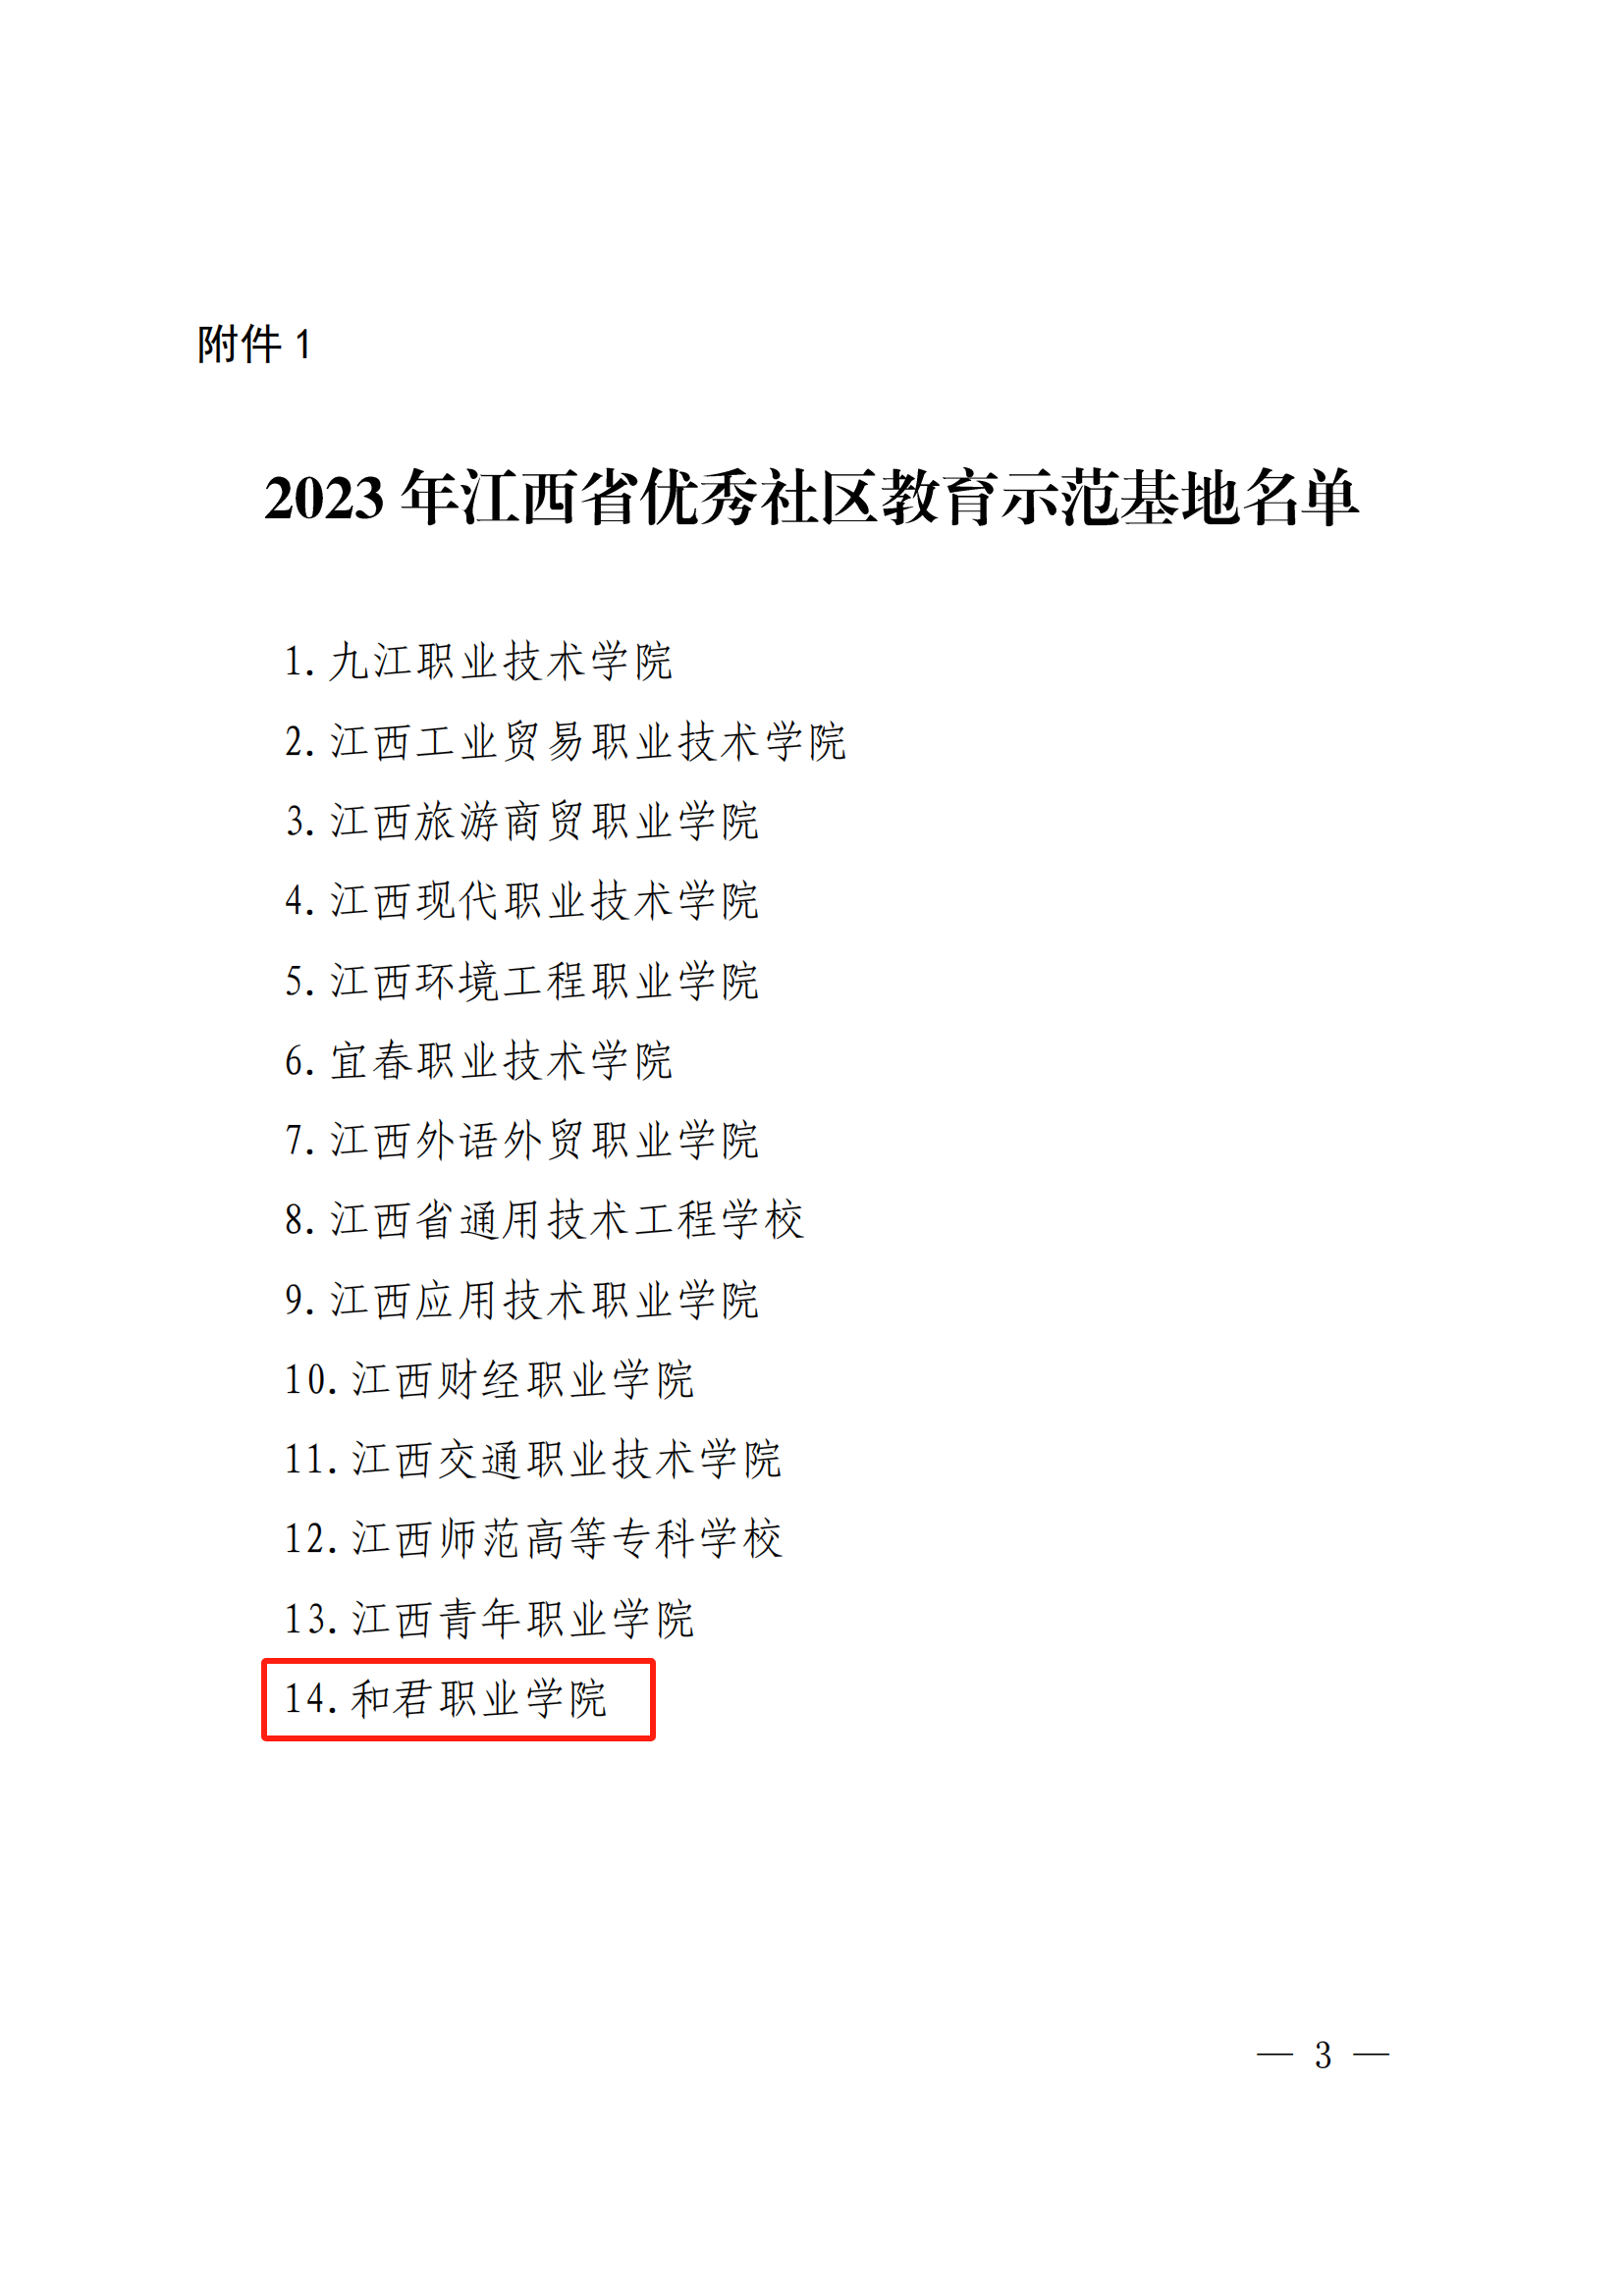 喜报丨我校被评定为2023 年江西省优秀社区教育示范基地